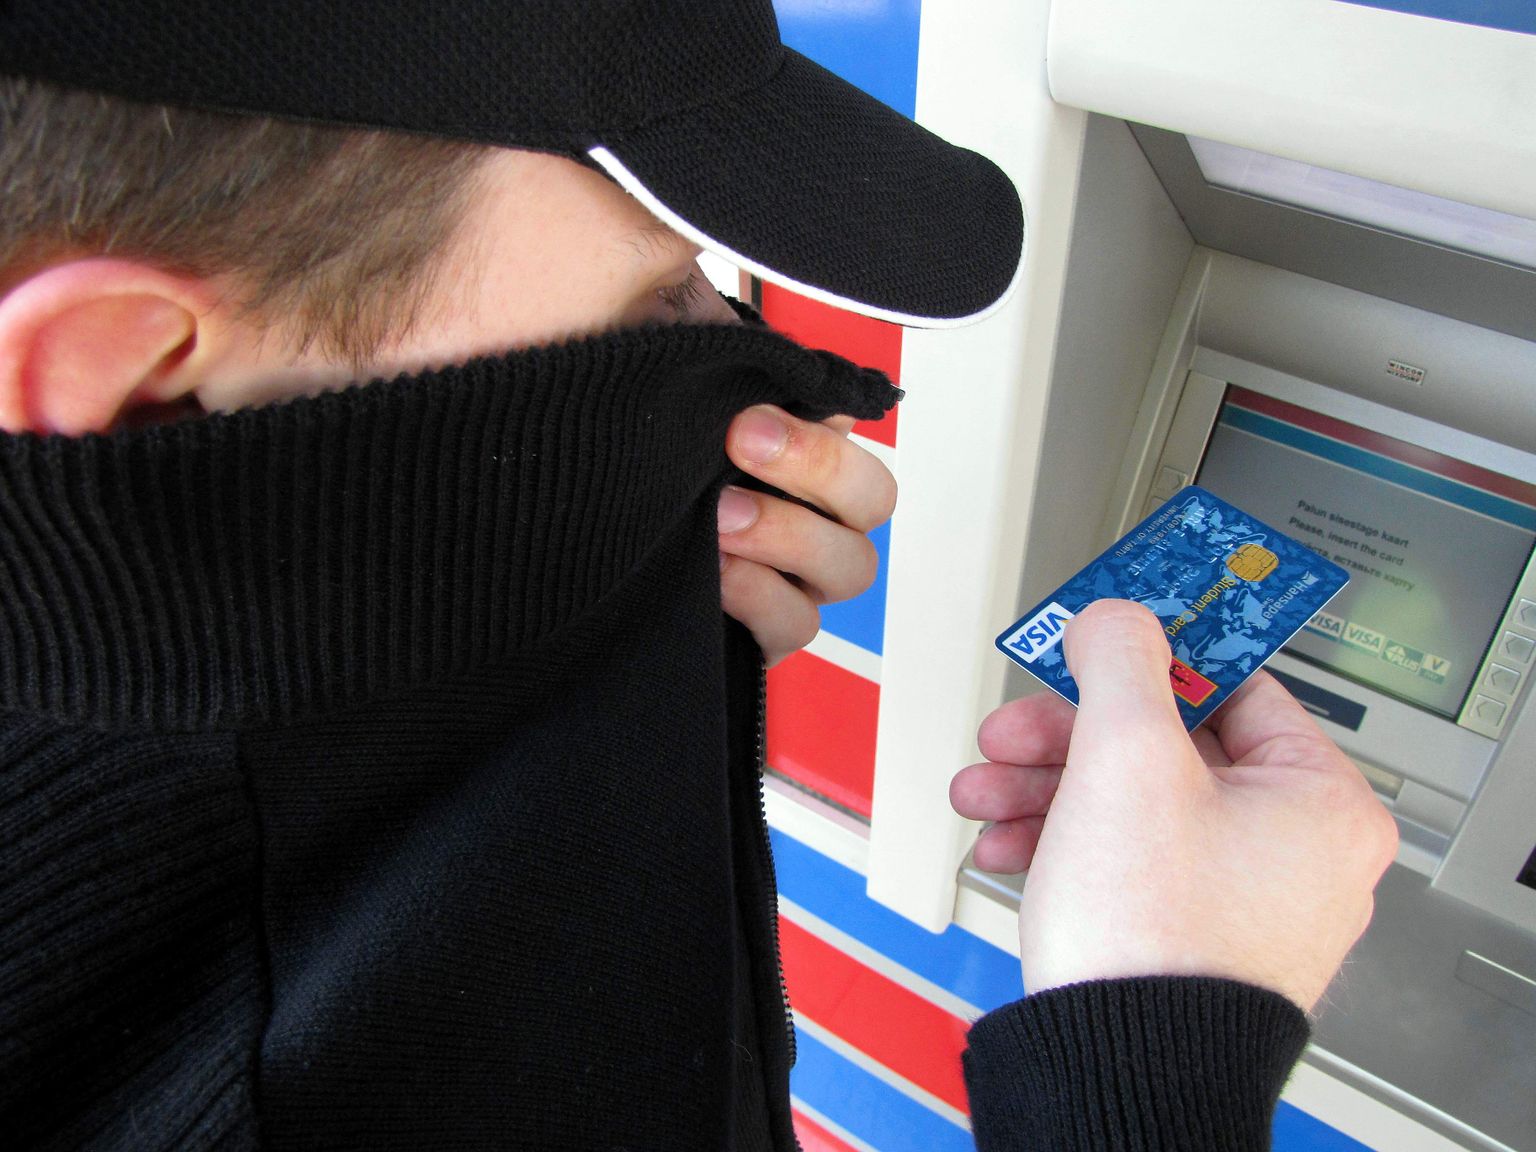 Pätt võtab võõra kaardiga panguaautomaadist raha.